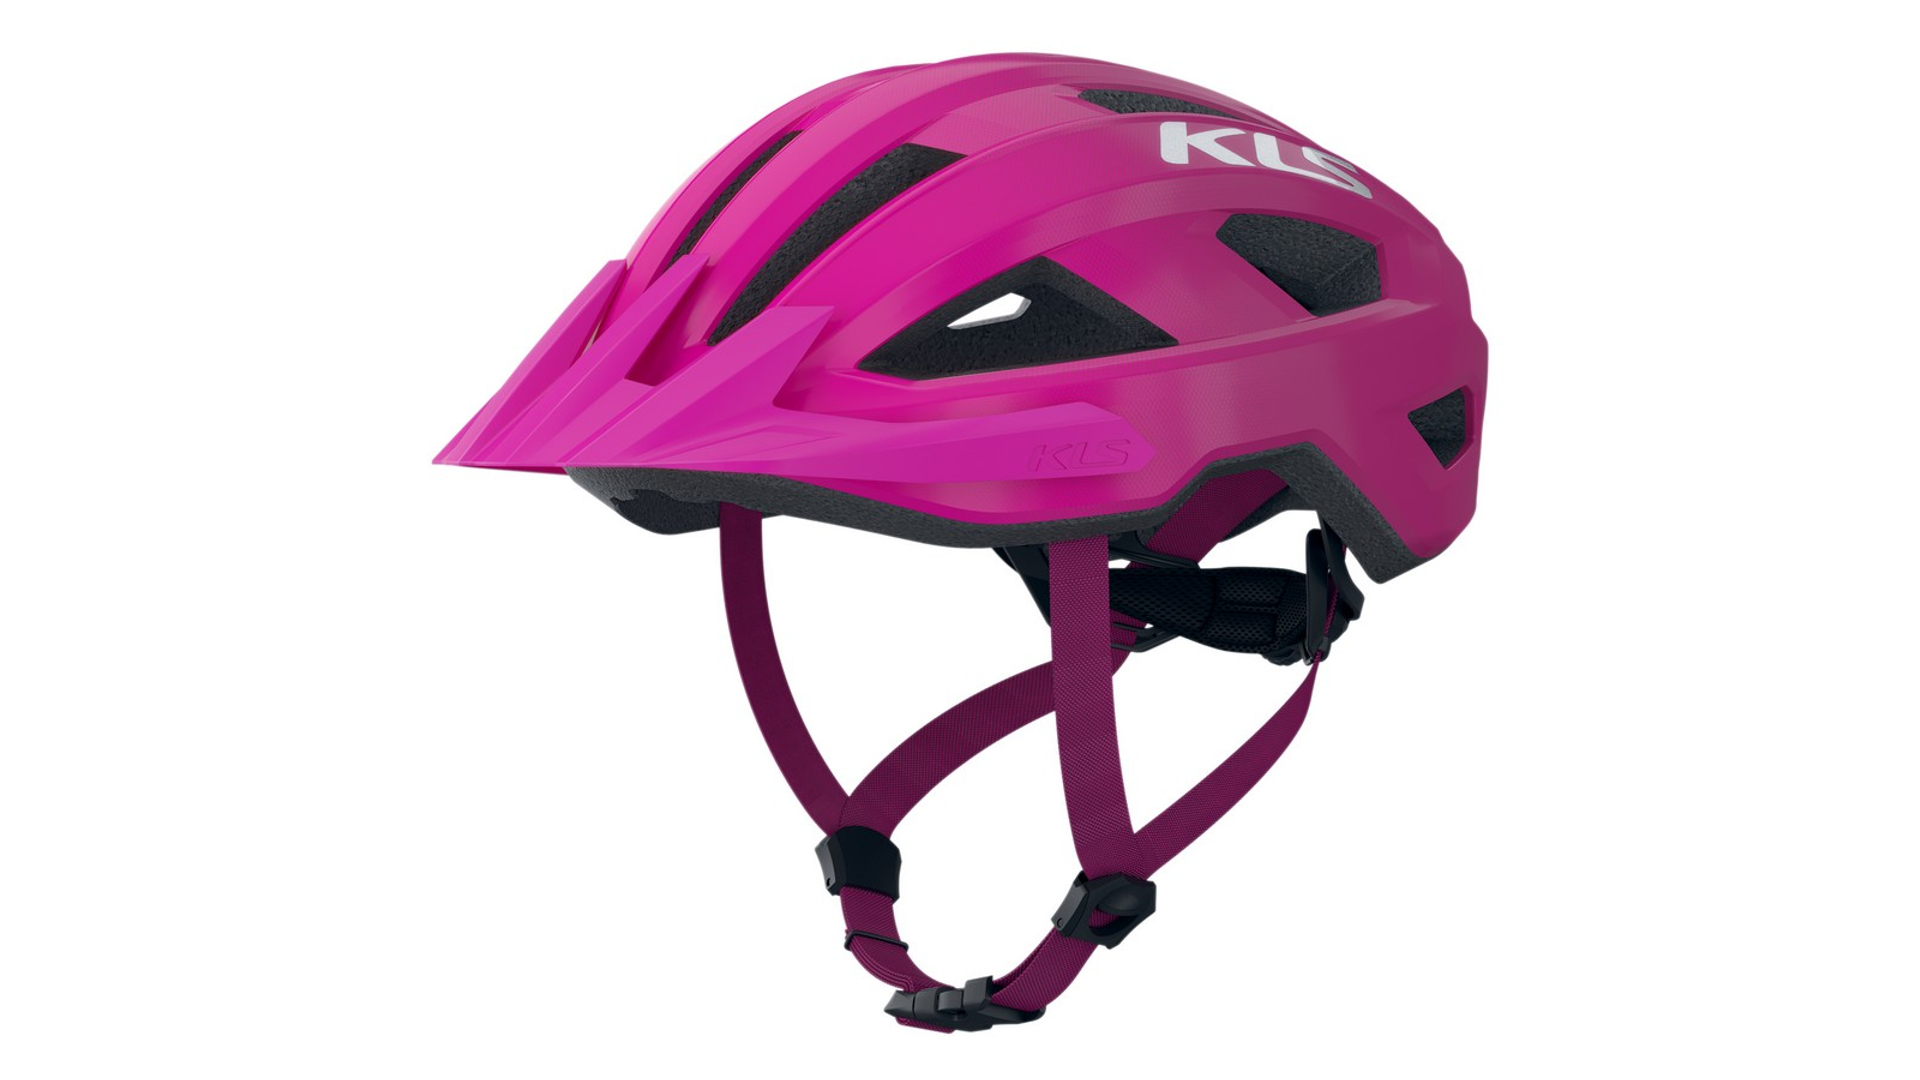 KELLYS Daze 022 MTB XC kerékpáros sisak, pink, S/M (52-55 cm)